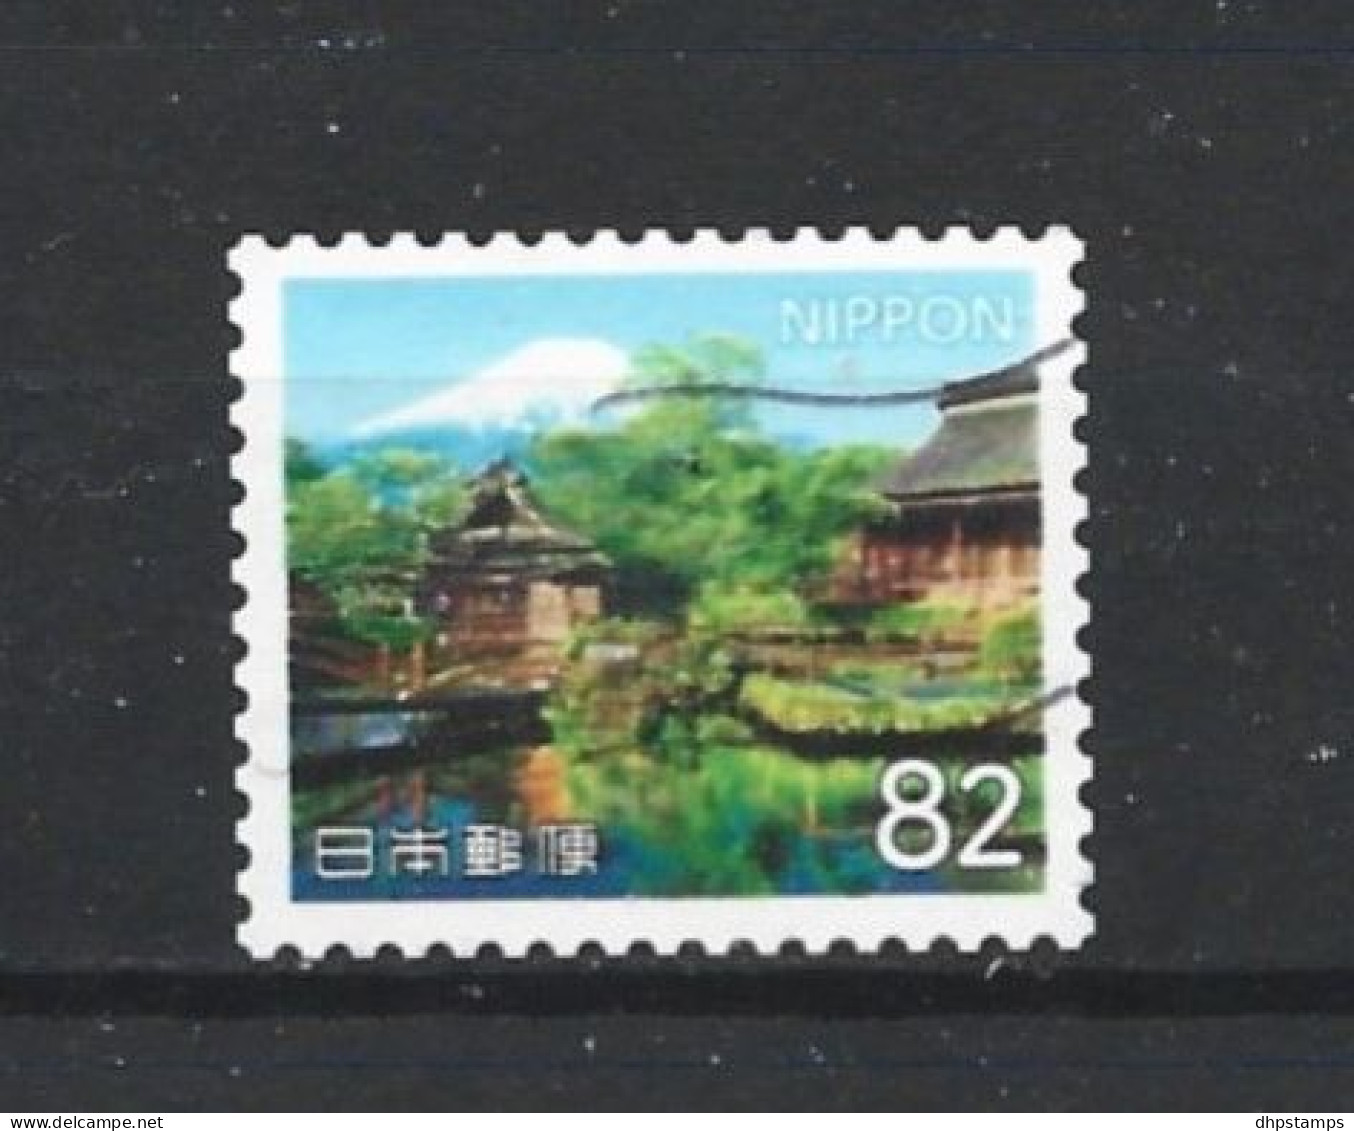 Japan 2018 Tourism Y.T. 8633 (0) - Gebraucht